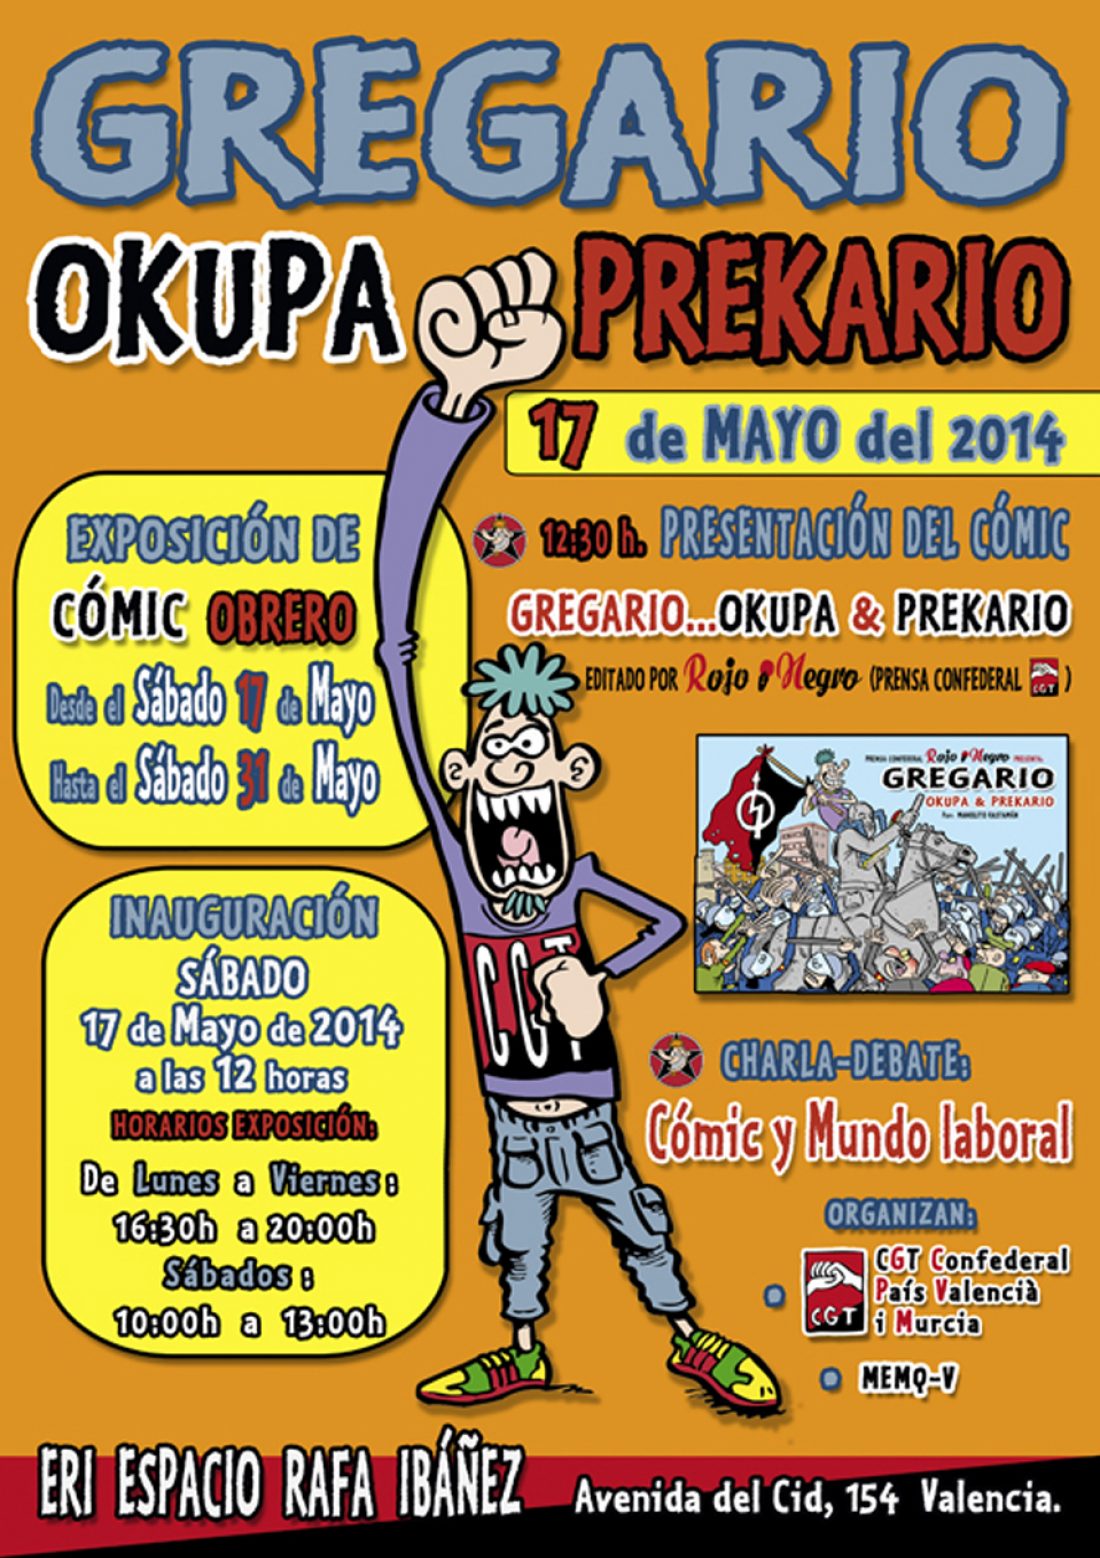 Gregario… Okupa & Prekario a València